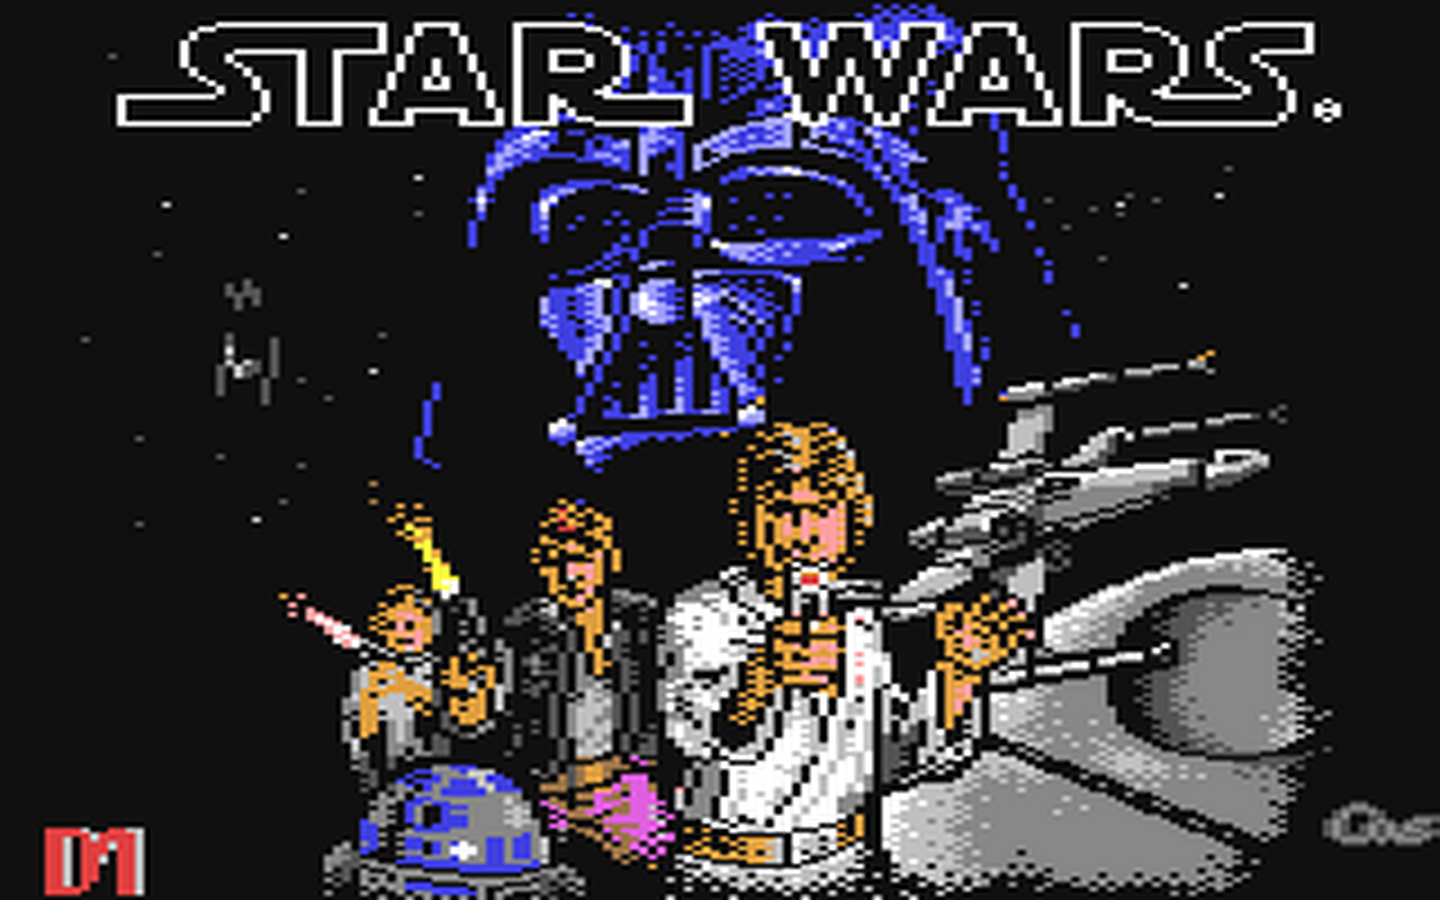 C64 GameBase Star_Wars Broderbund 1989